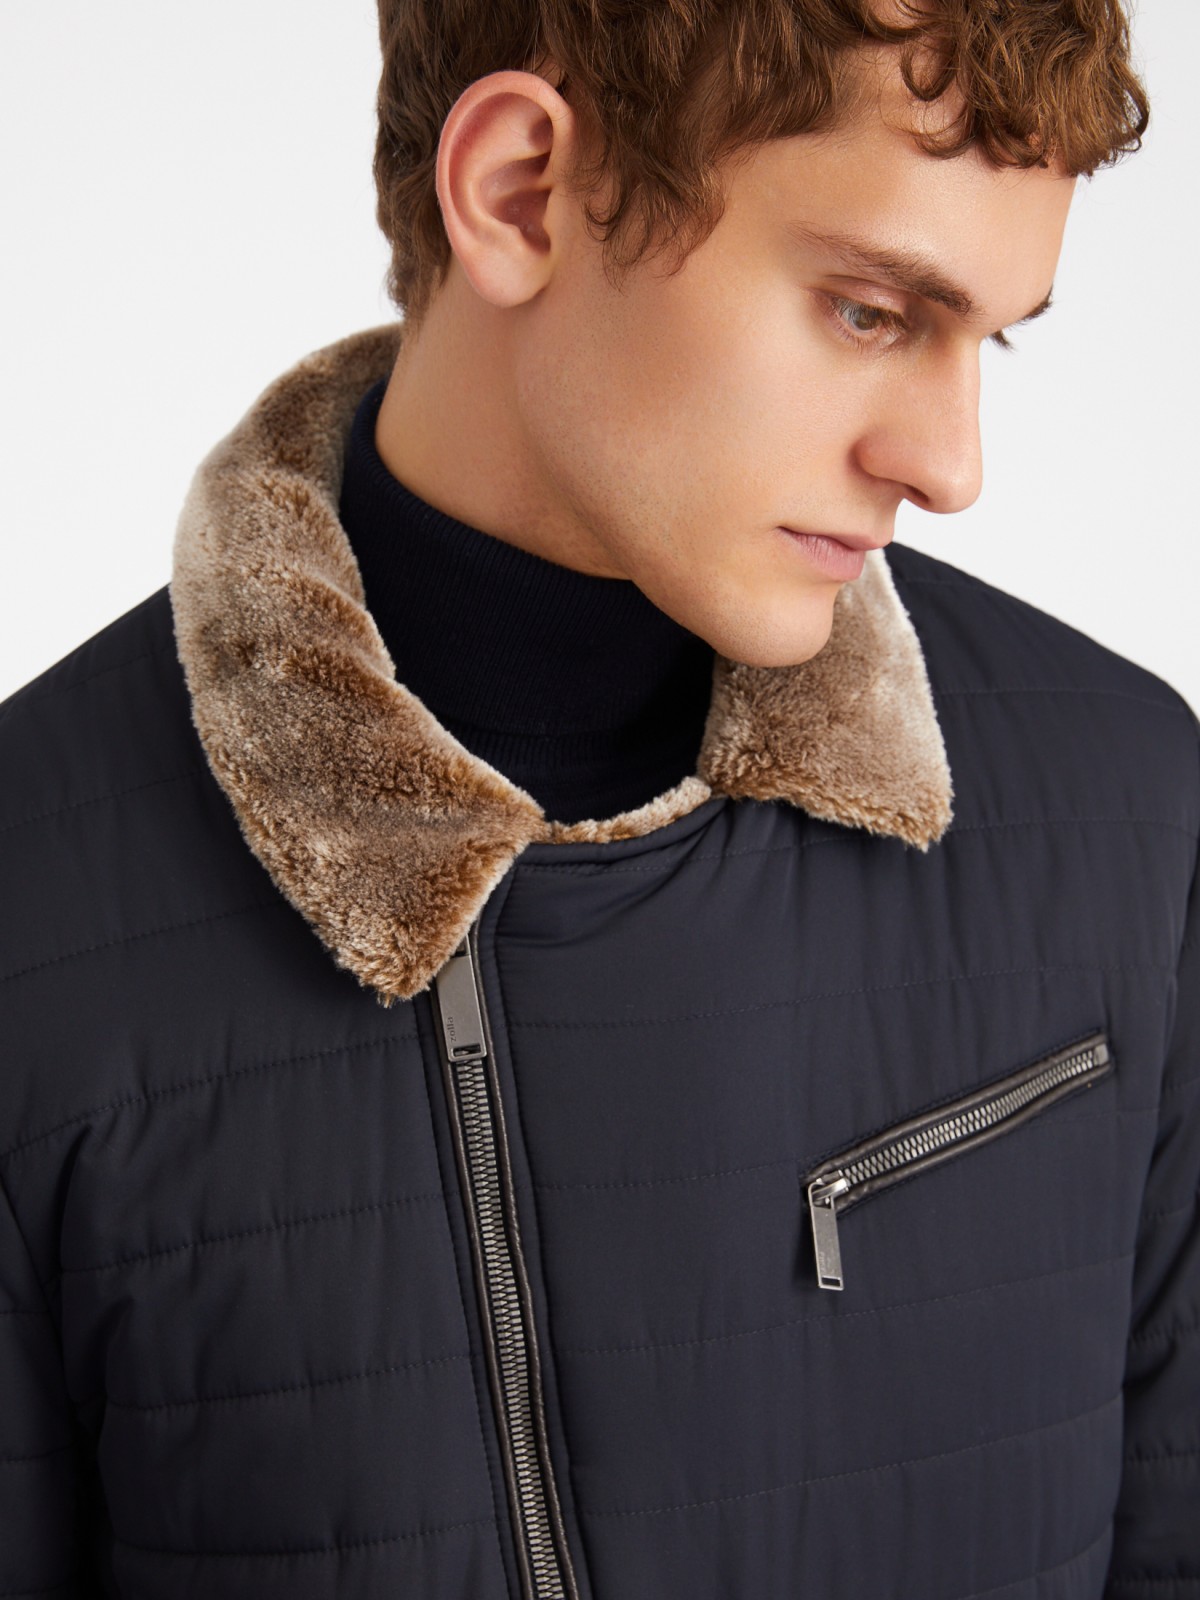 Тёплая стёганая куртка-косуха с подкладкой из экомеха на синтепоне